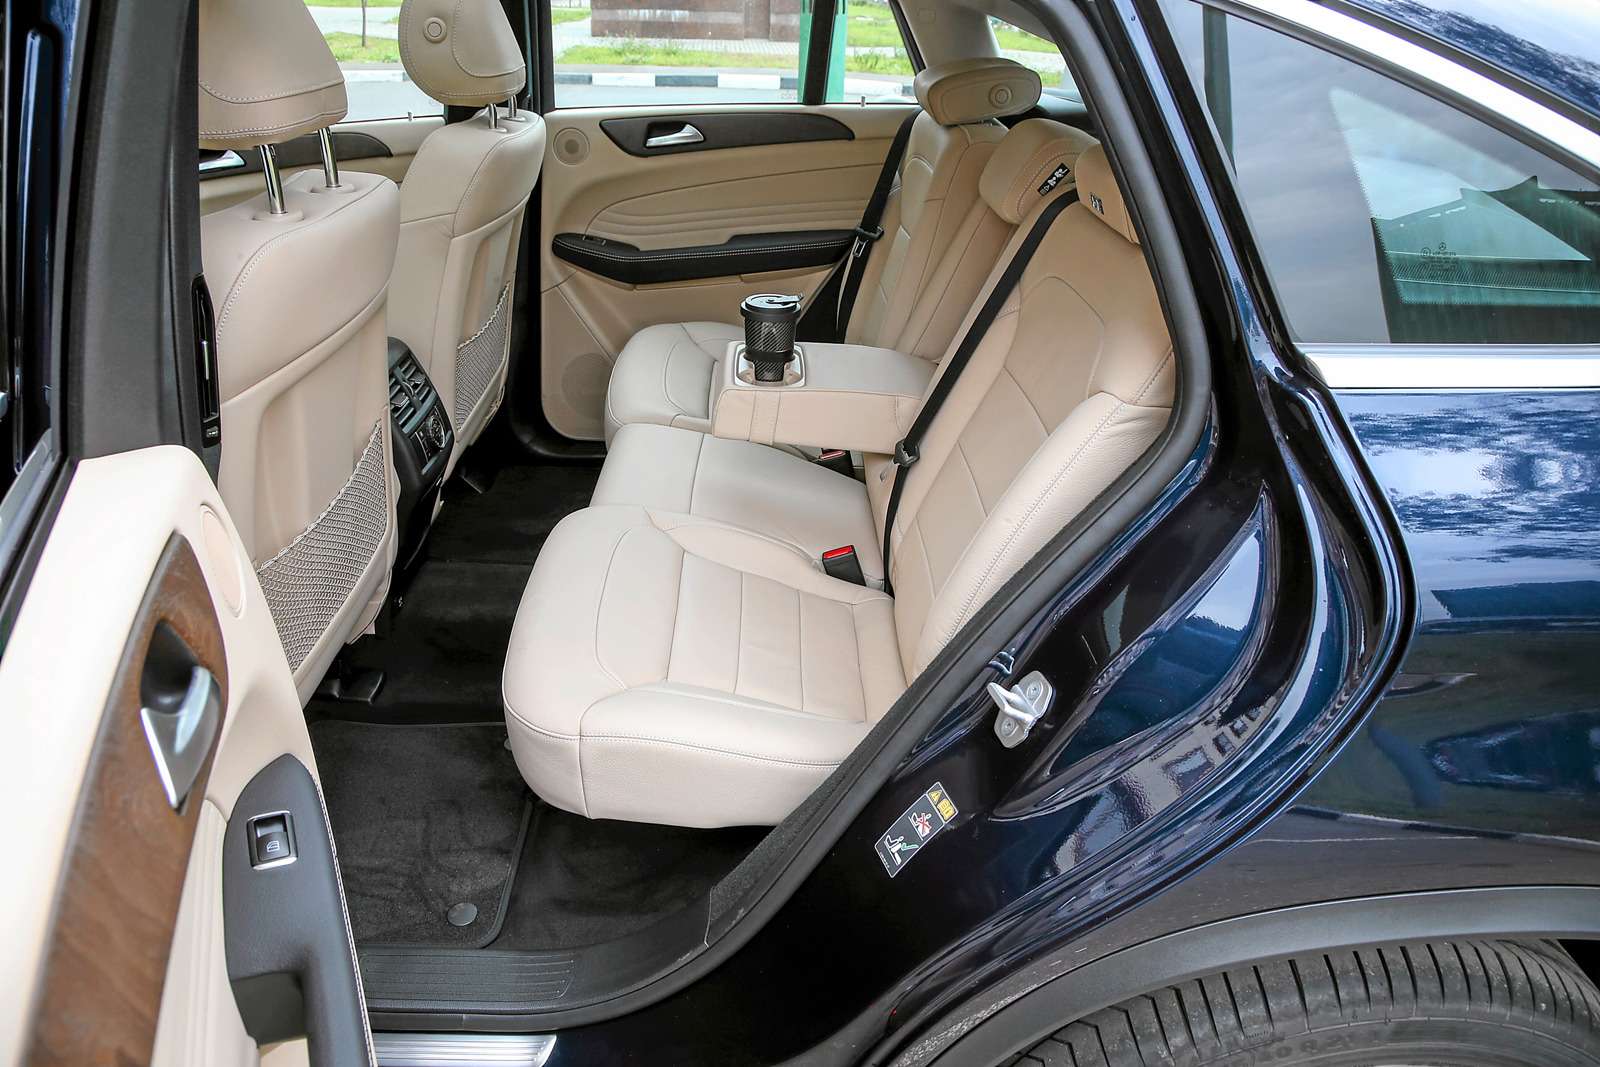 Mercedes-Benz GLE 400 4Matic Coupe. Крыша пологая, тем не менее сзади запас пространства над головой есть даже у высоких пассажиров.